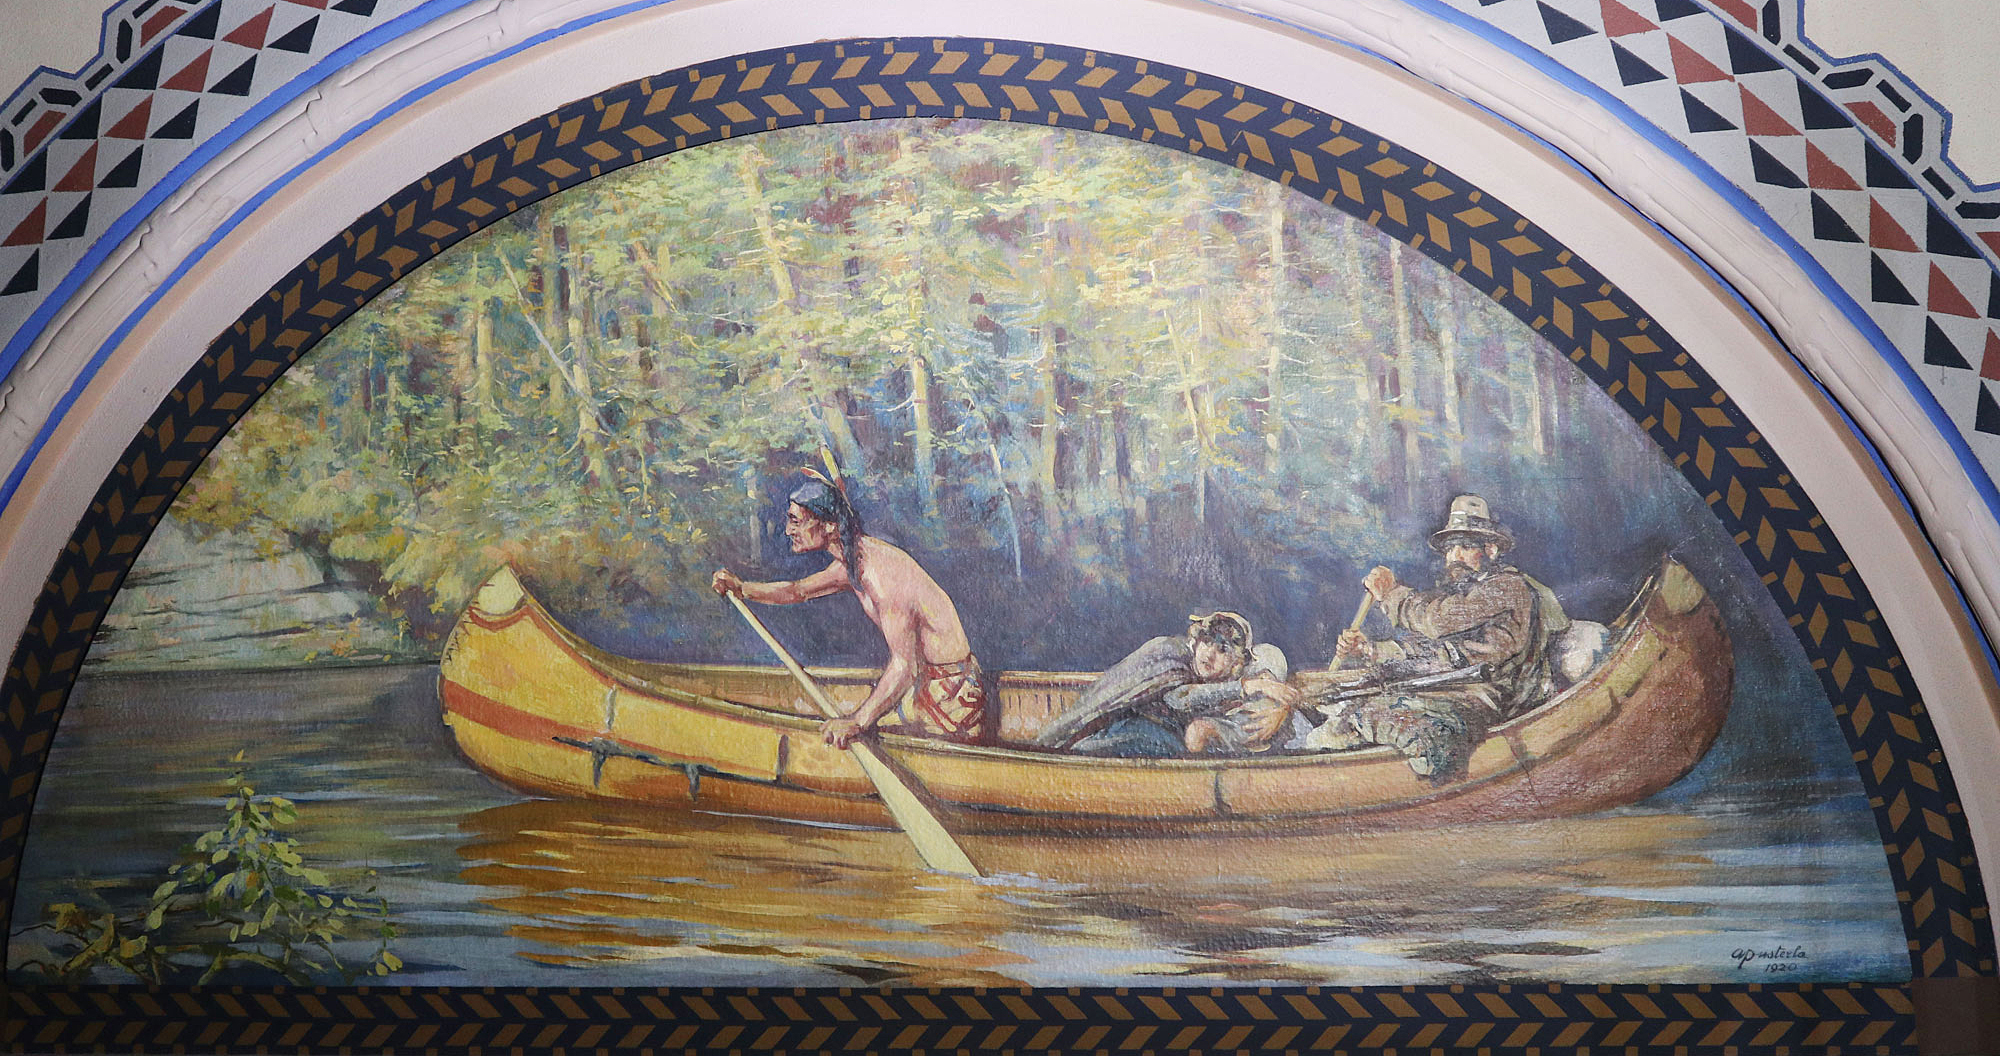 Murale d’Attilio Pusterla, dont le titre non officiel est Personnes en canot. (Crédit photo : Legris Conservation Inc.)